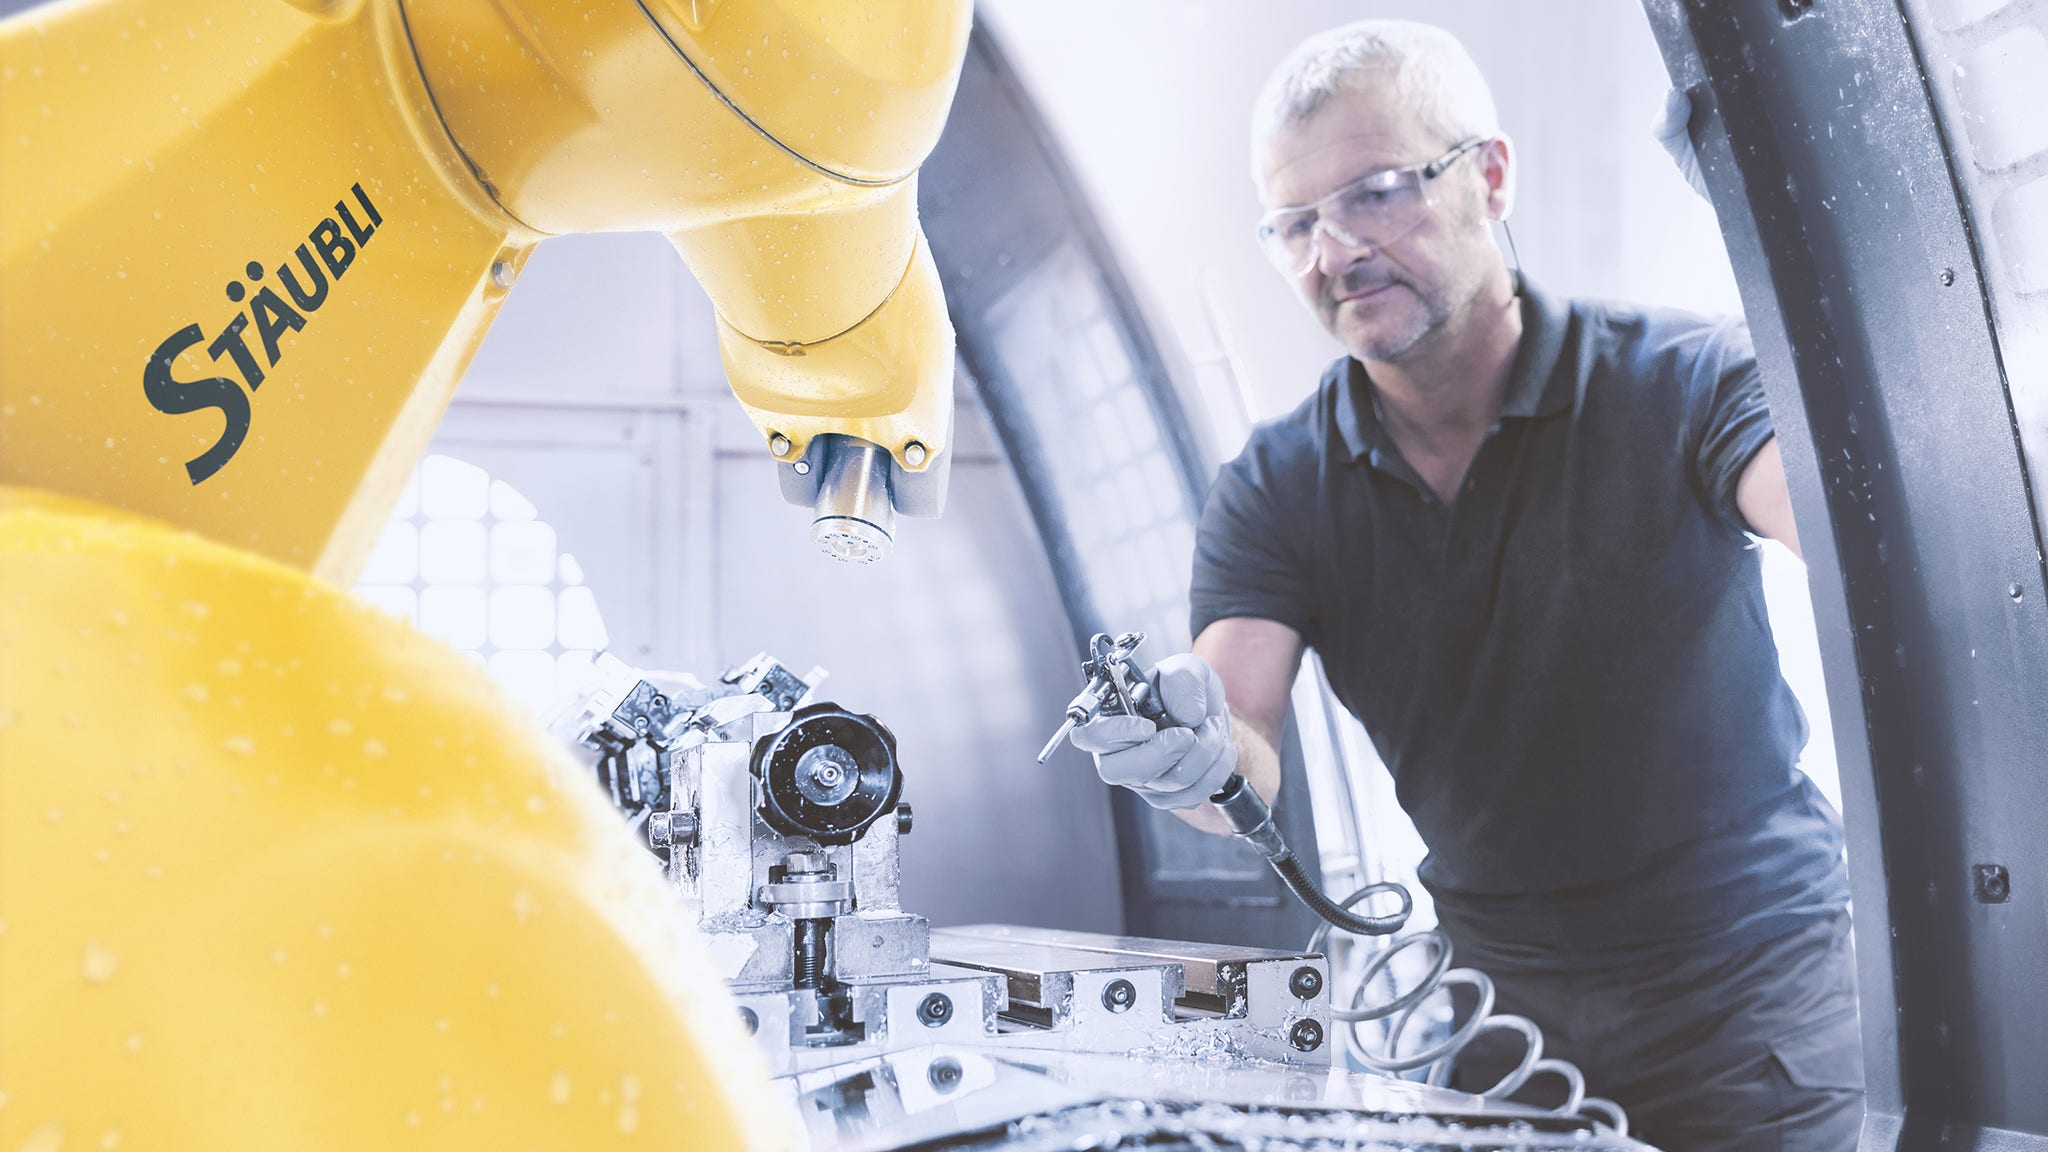 Robotics in the metal industry